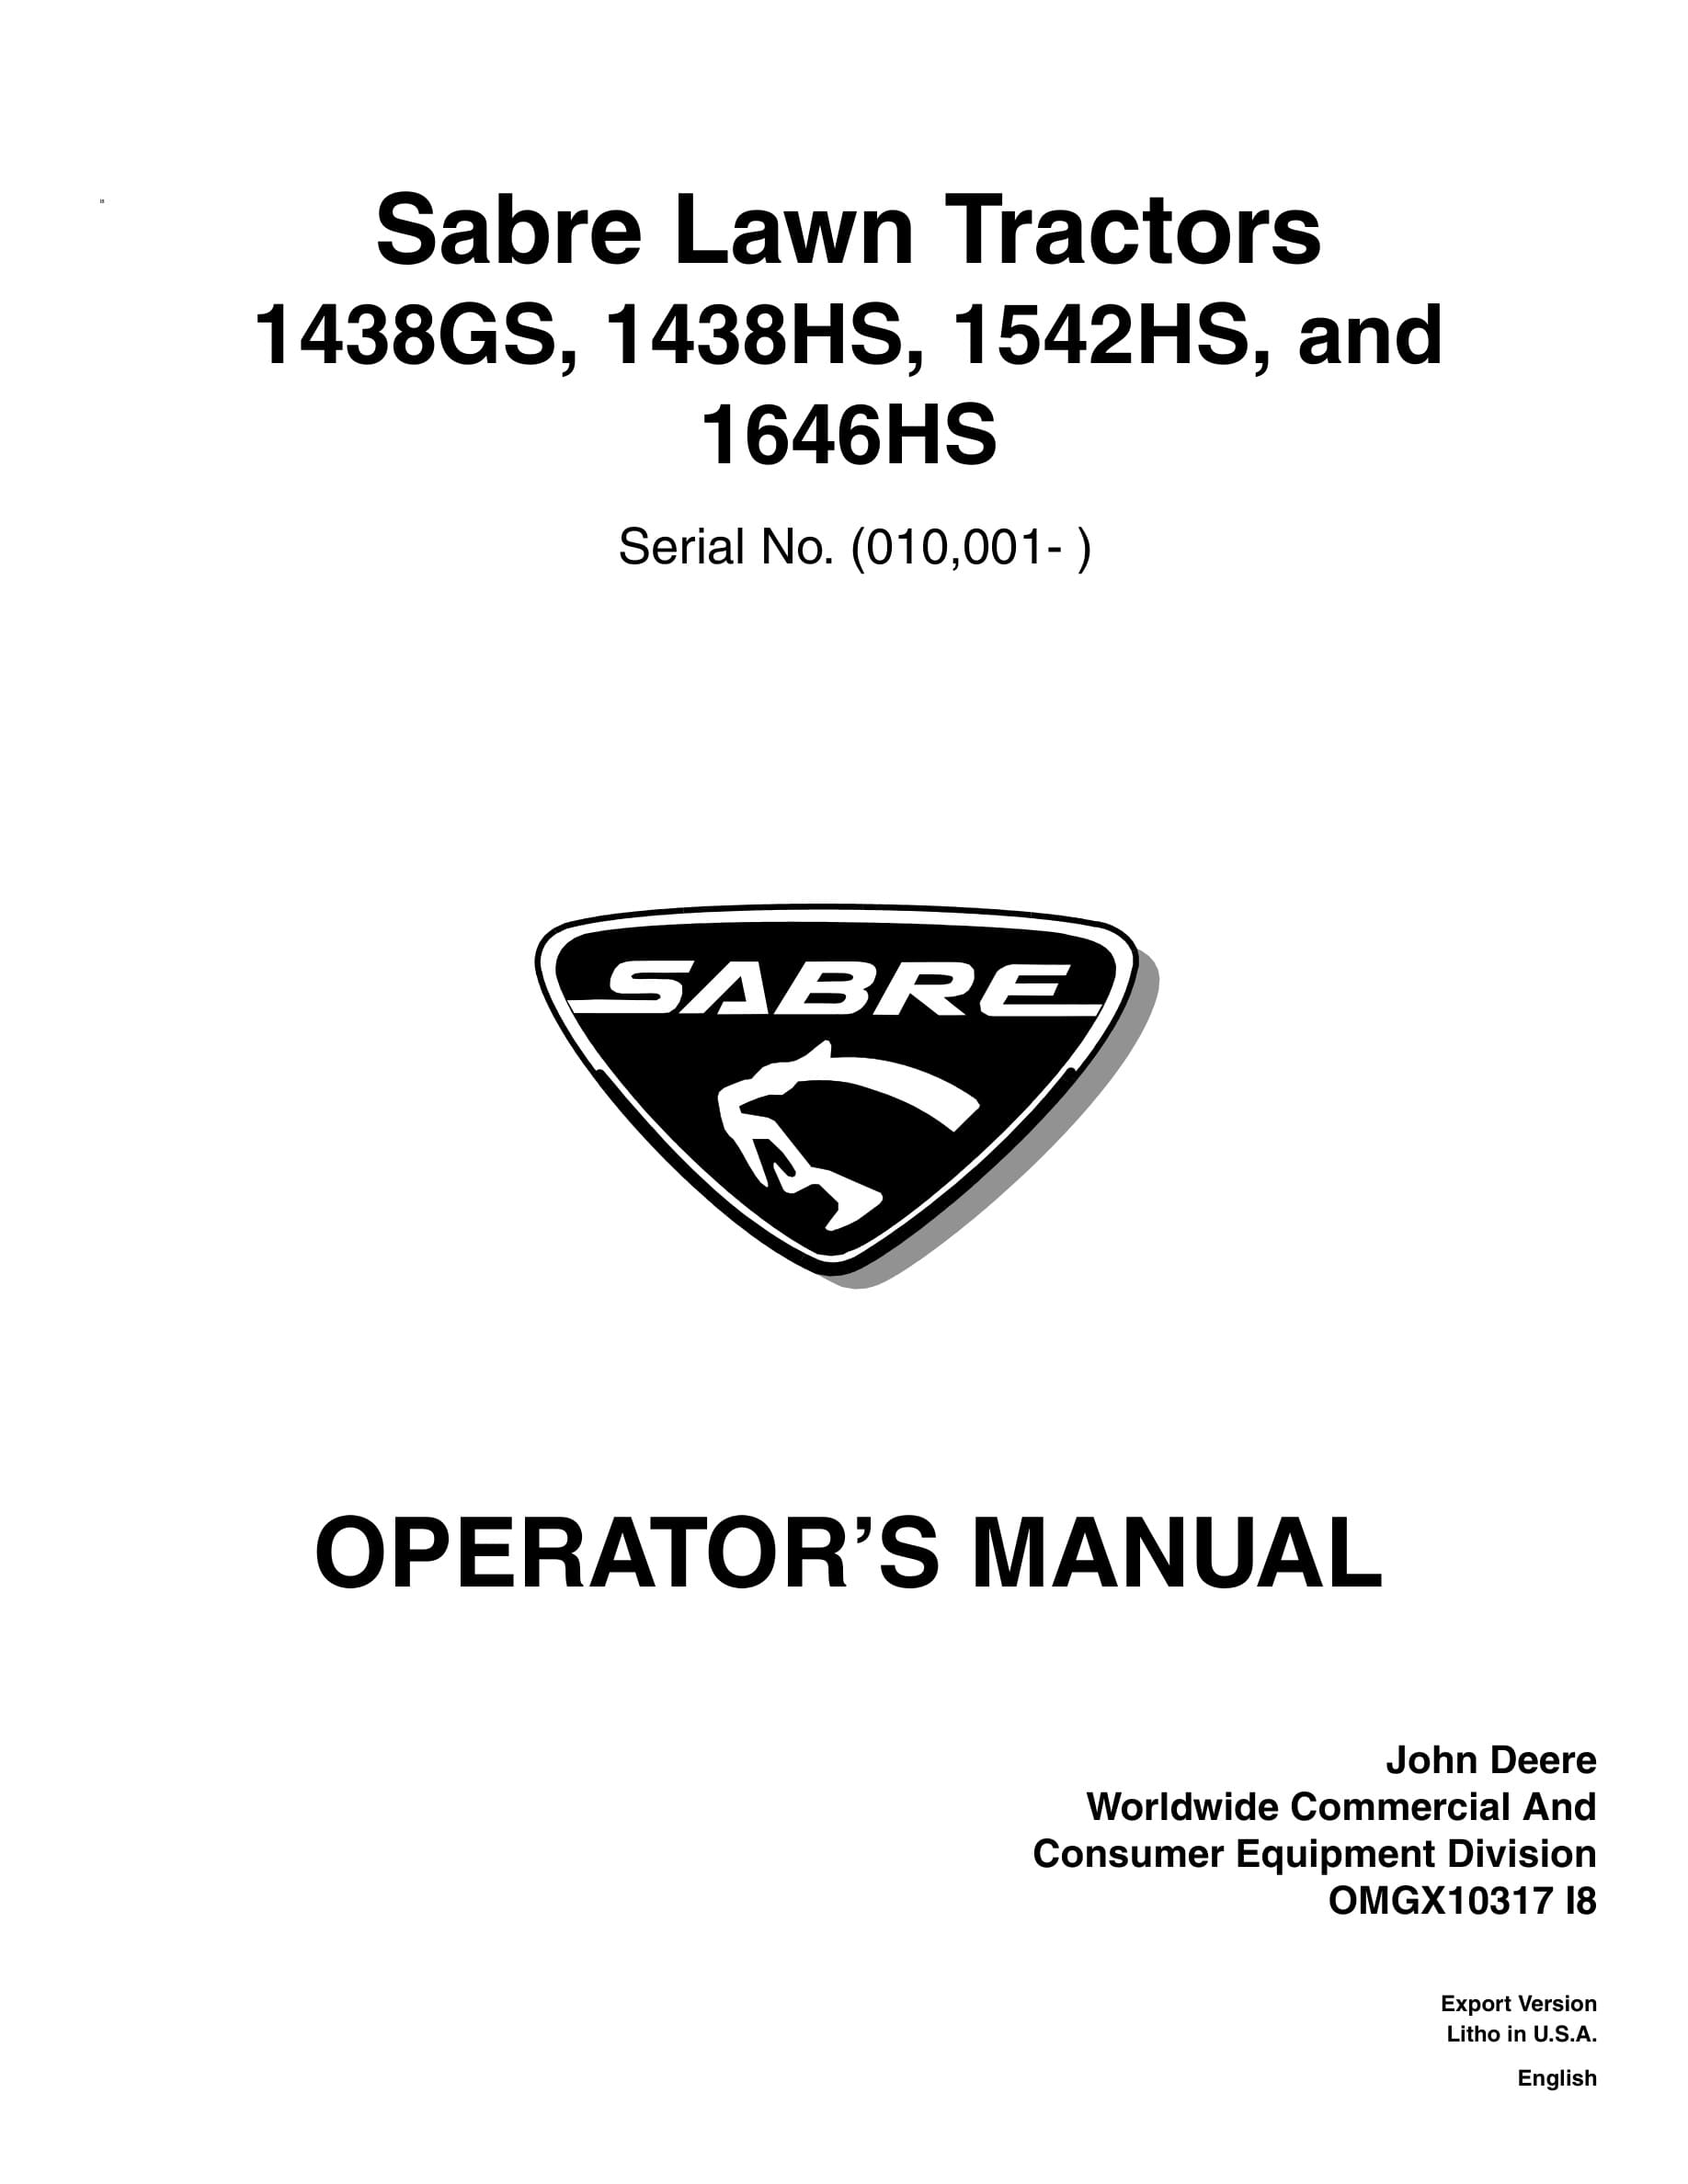 John Deere 1438gs, 1438hs, 1542hs, And 1646hs Sabre Lawn Tractors Operator Manuals OMGX10317-1